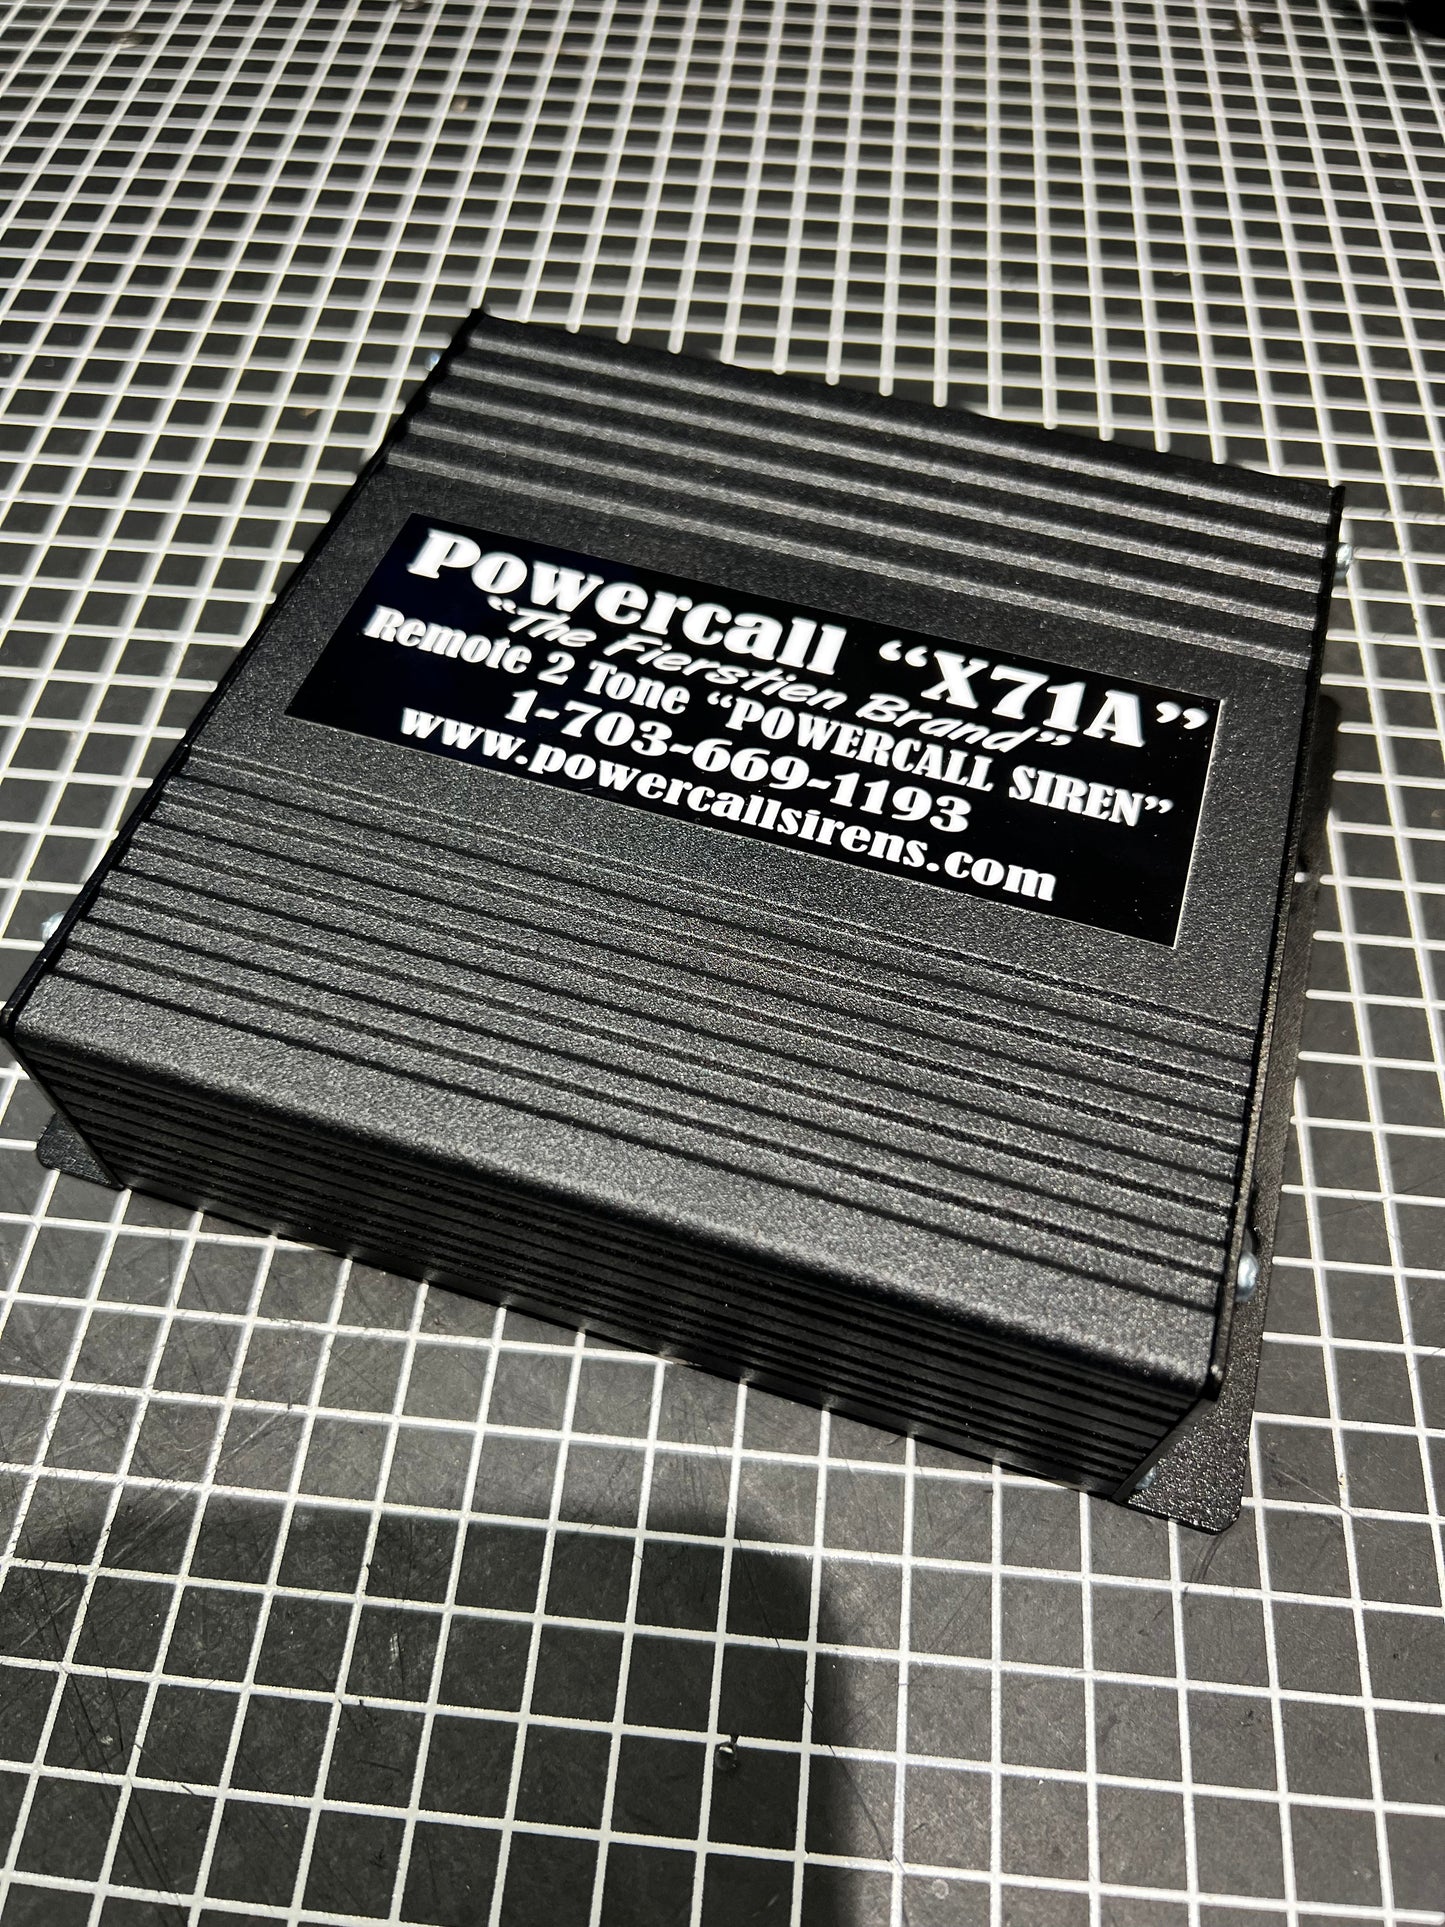 Powercall X71A Remote 2 Tone 100 Watt Siren